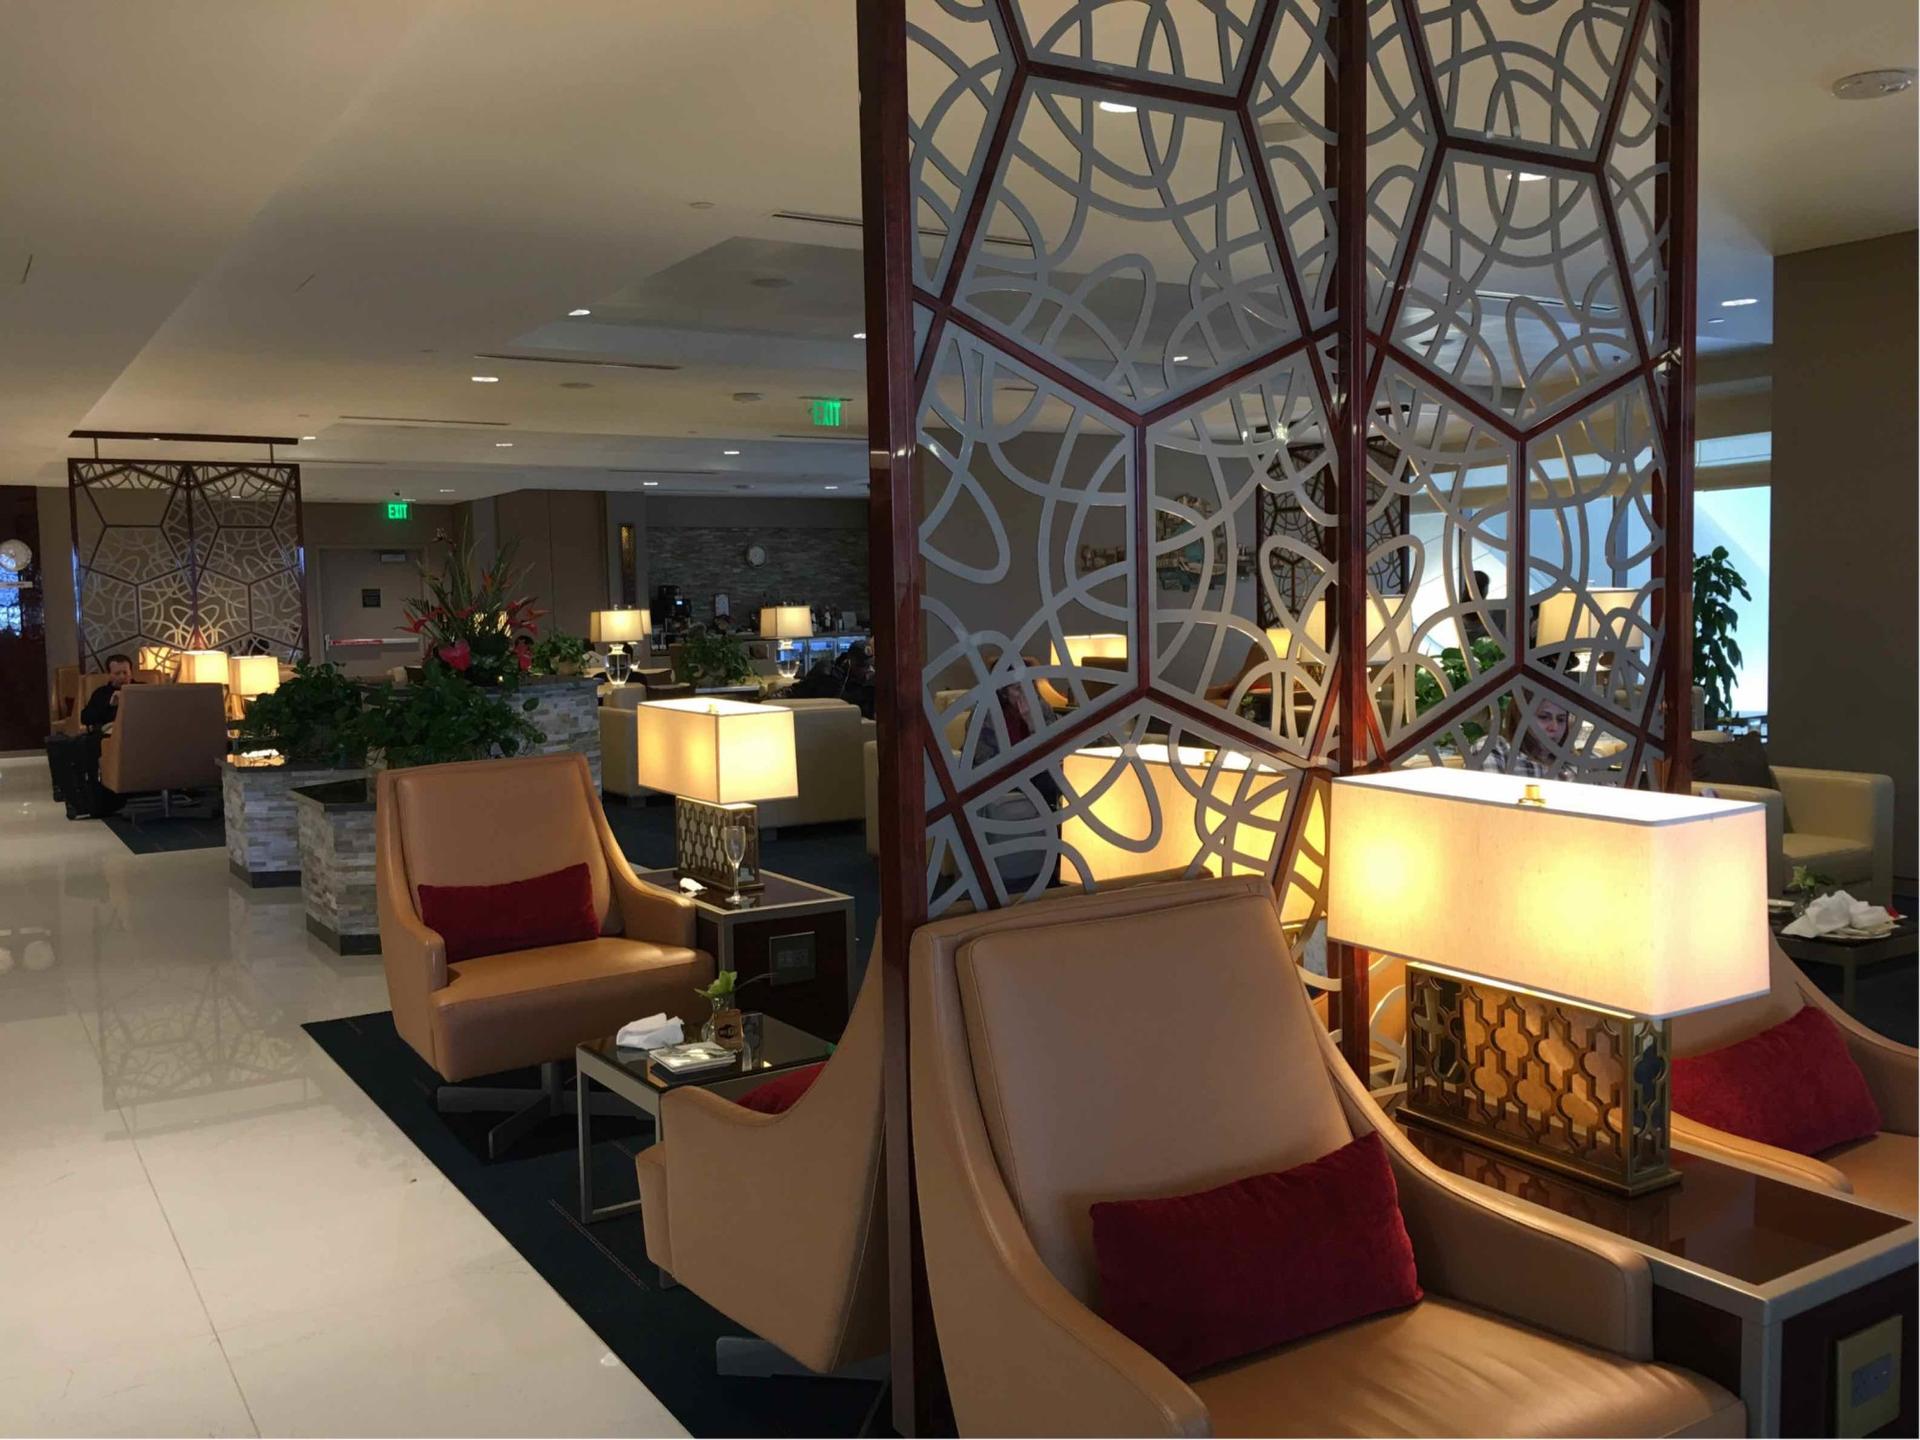 The Emirates Lounge image 5 of 12